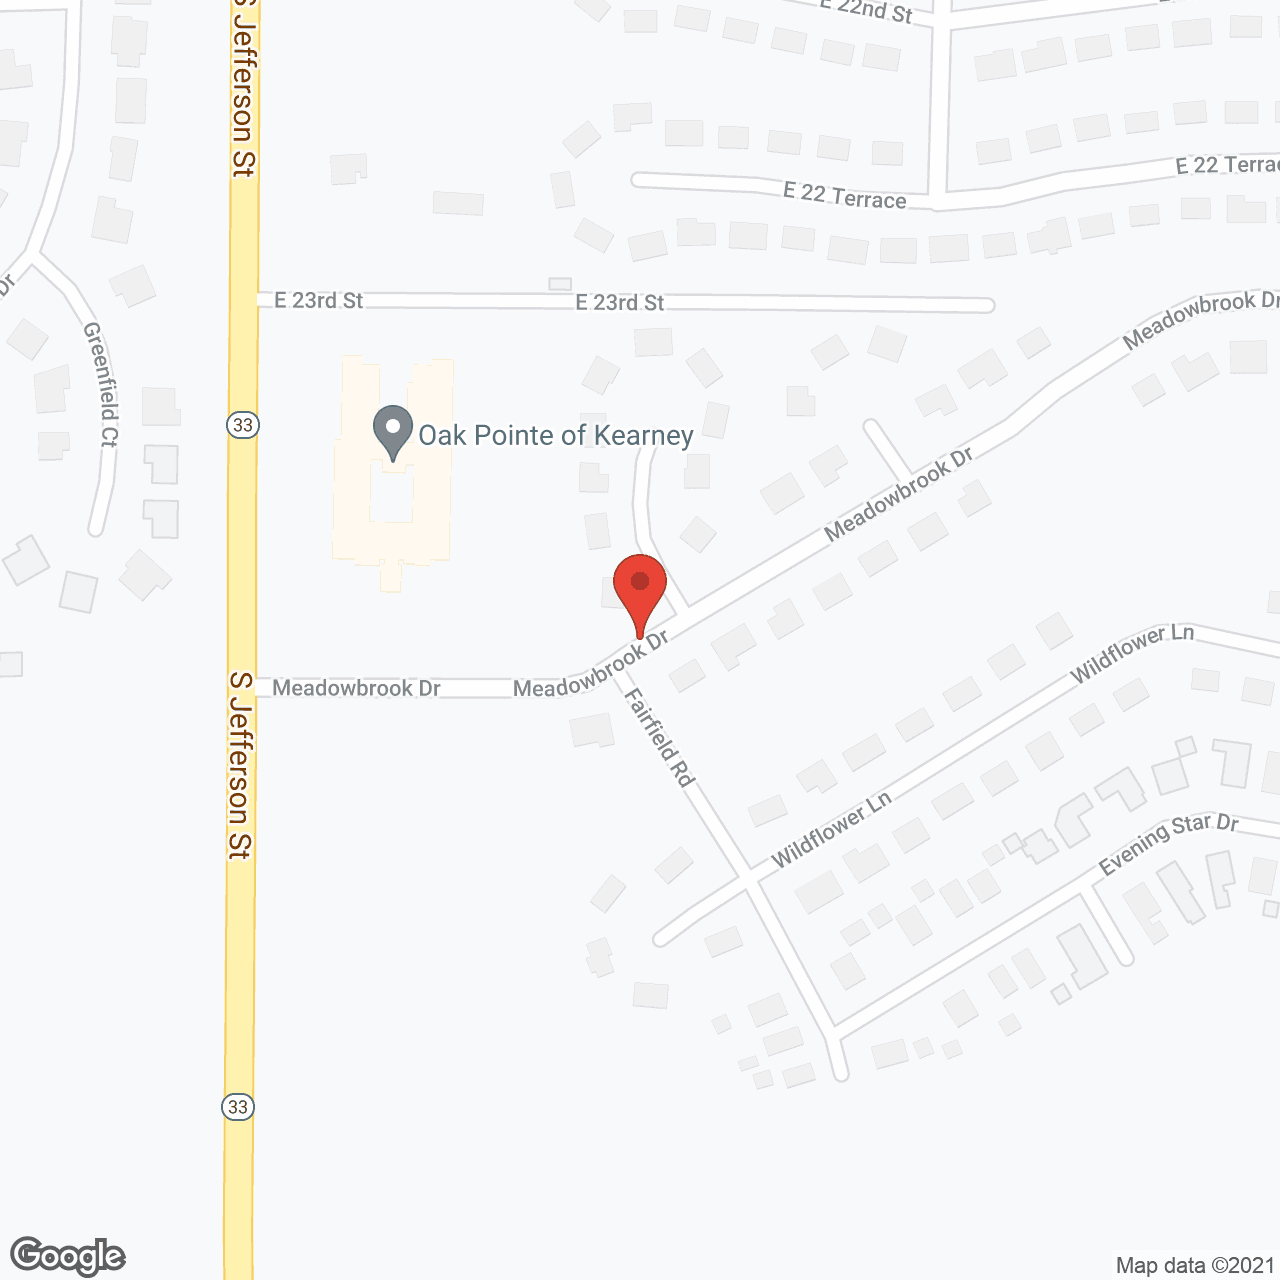 Oak Pointe of Kearney in google map